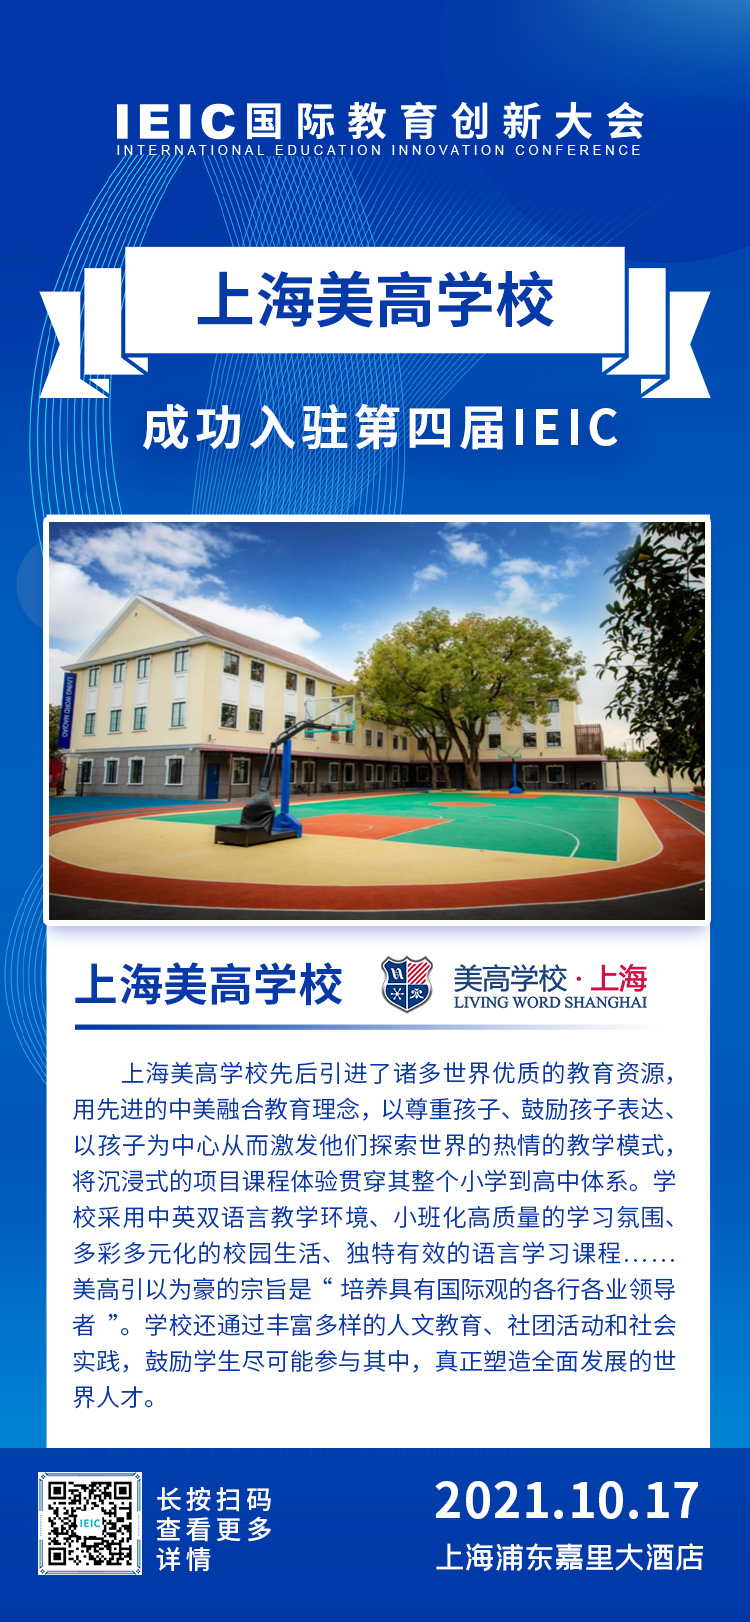 上海美高学校|入驻参展2021年远播第四届IEIC国际教育创新大会